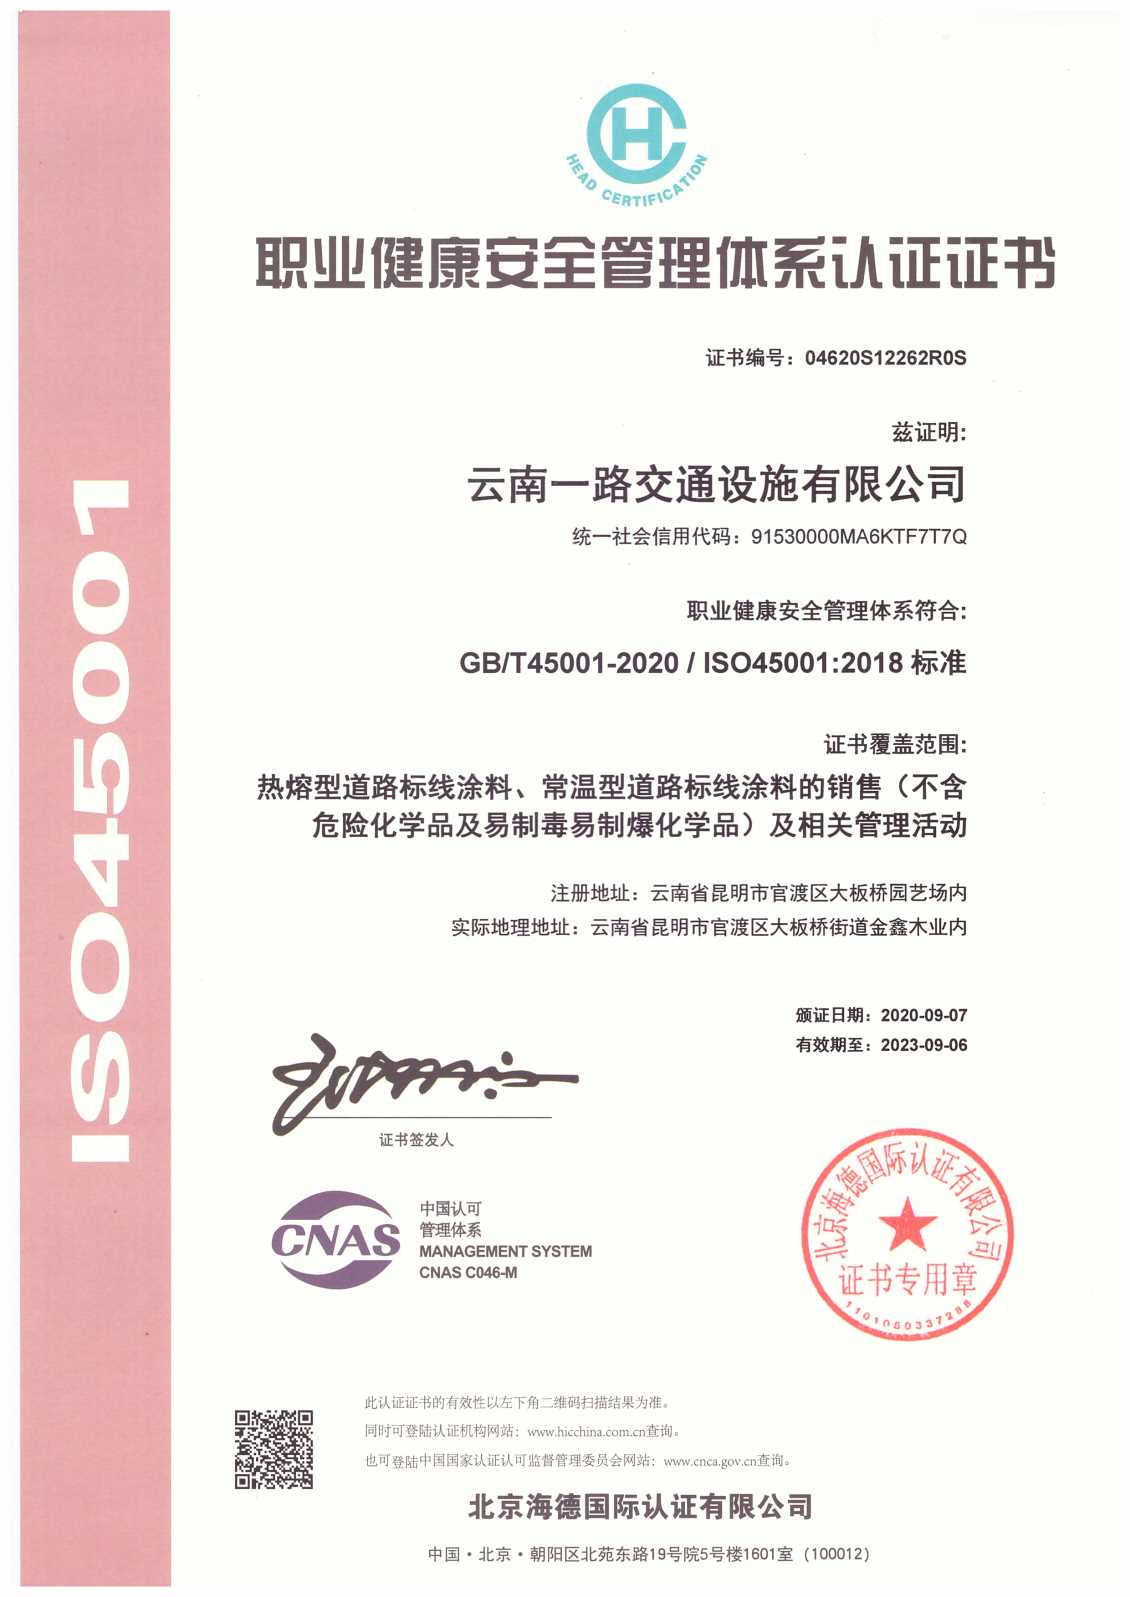 2020年通过职业健康安全管理体系ISO45001:2018标准认证